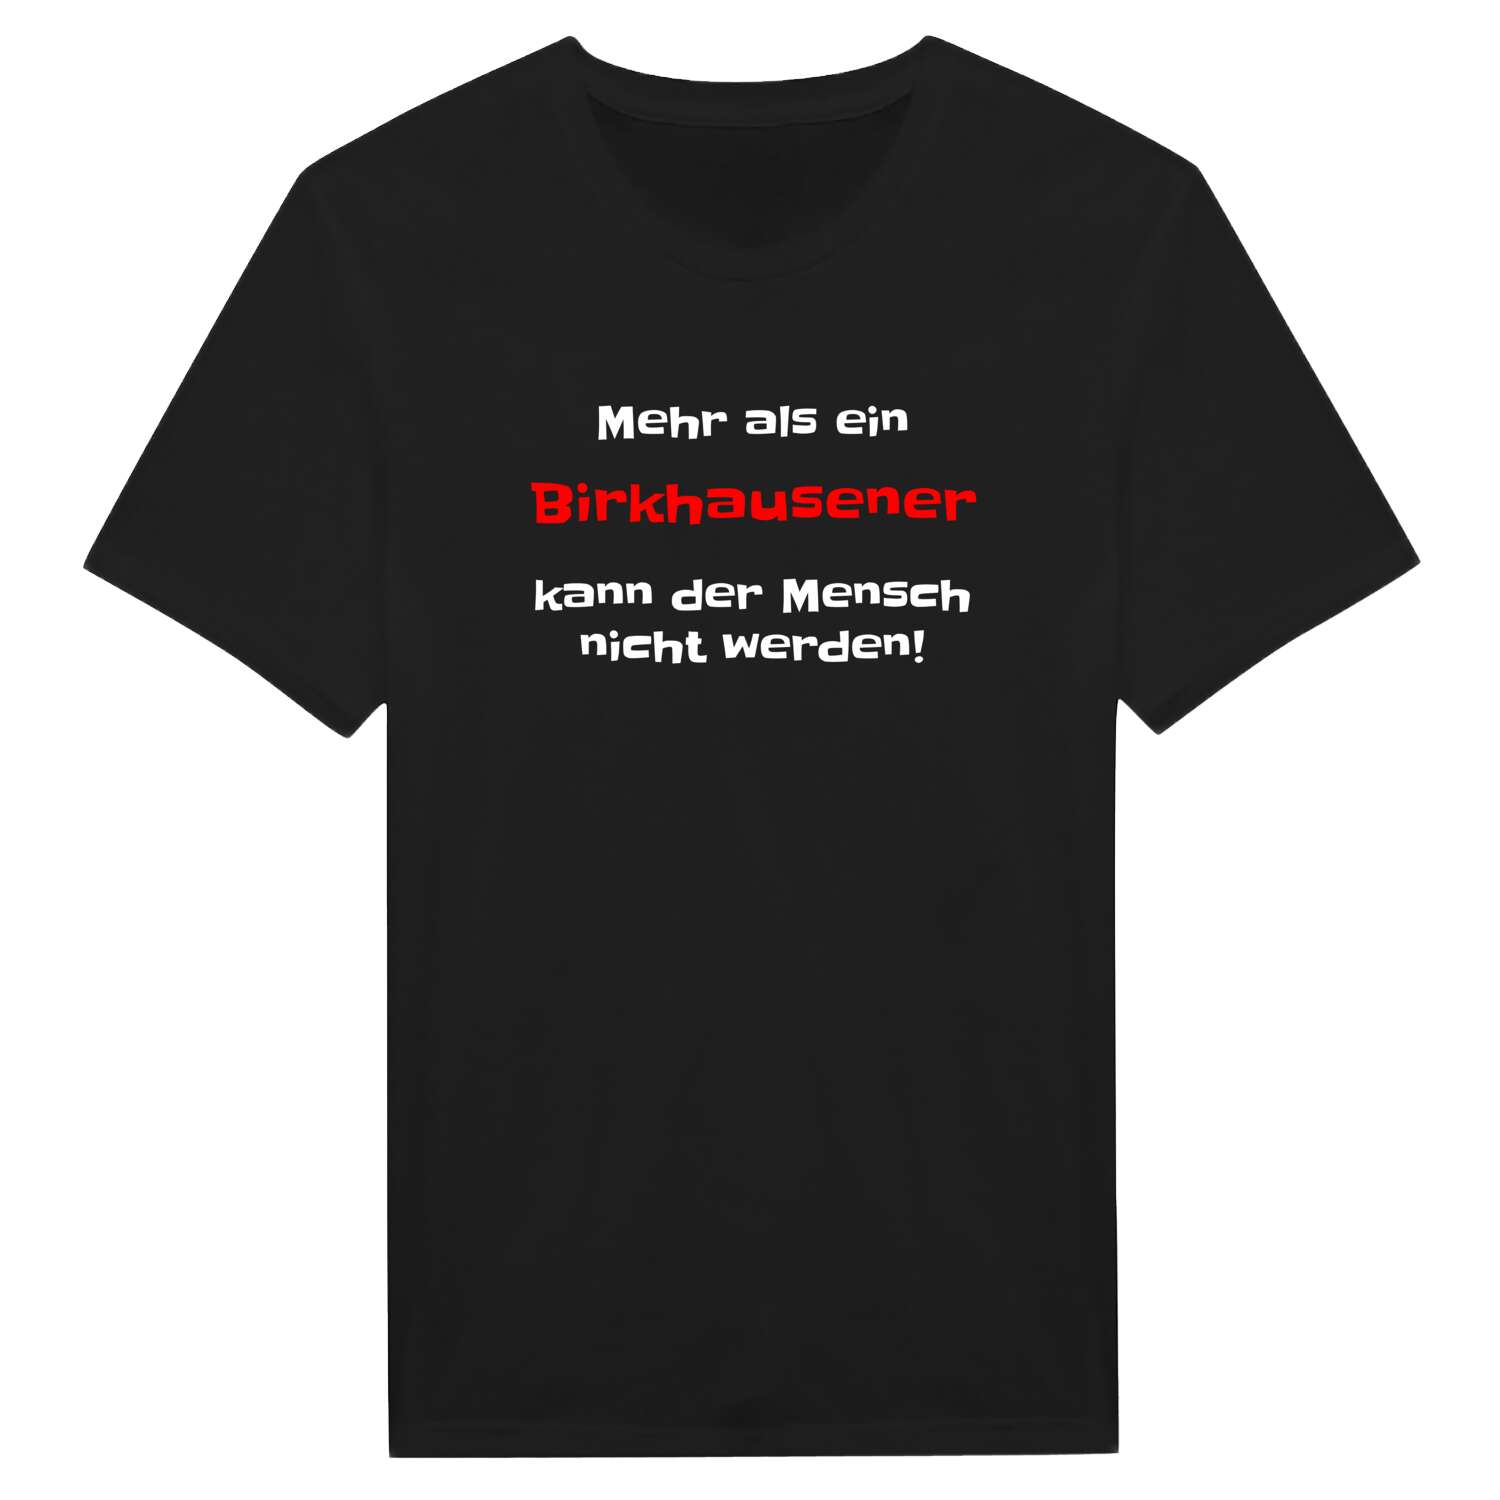 Birkhausen T-Shirt »Mehr als ein«